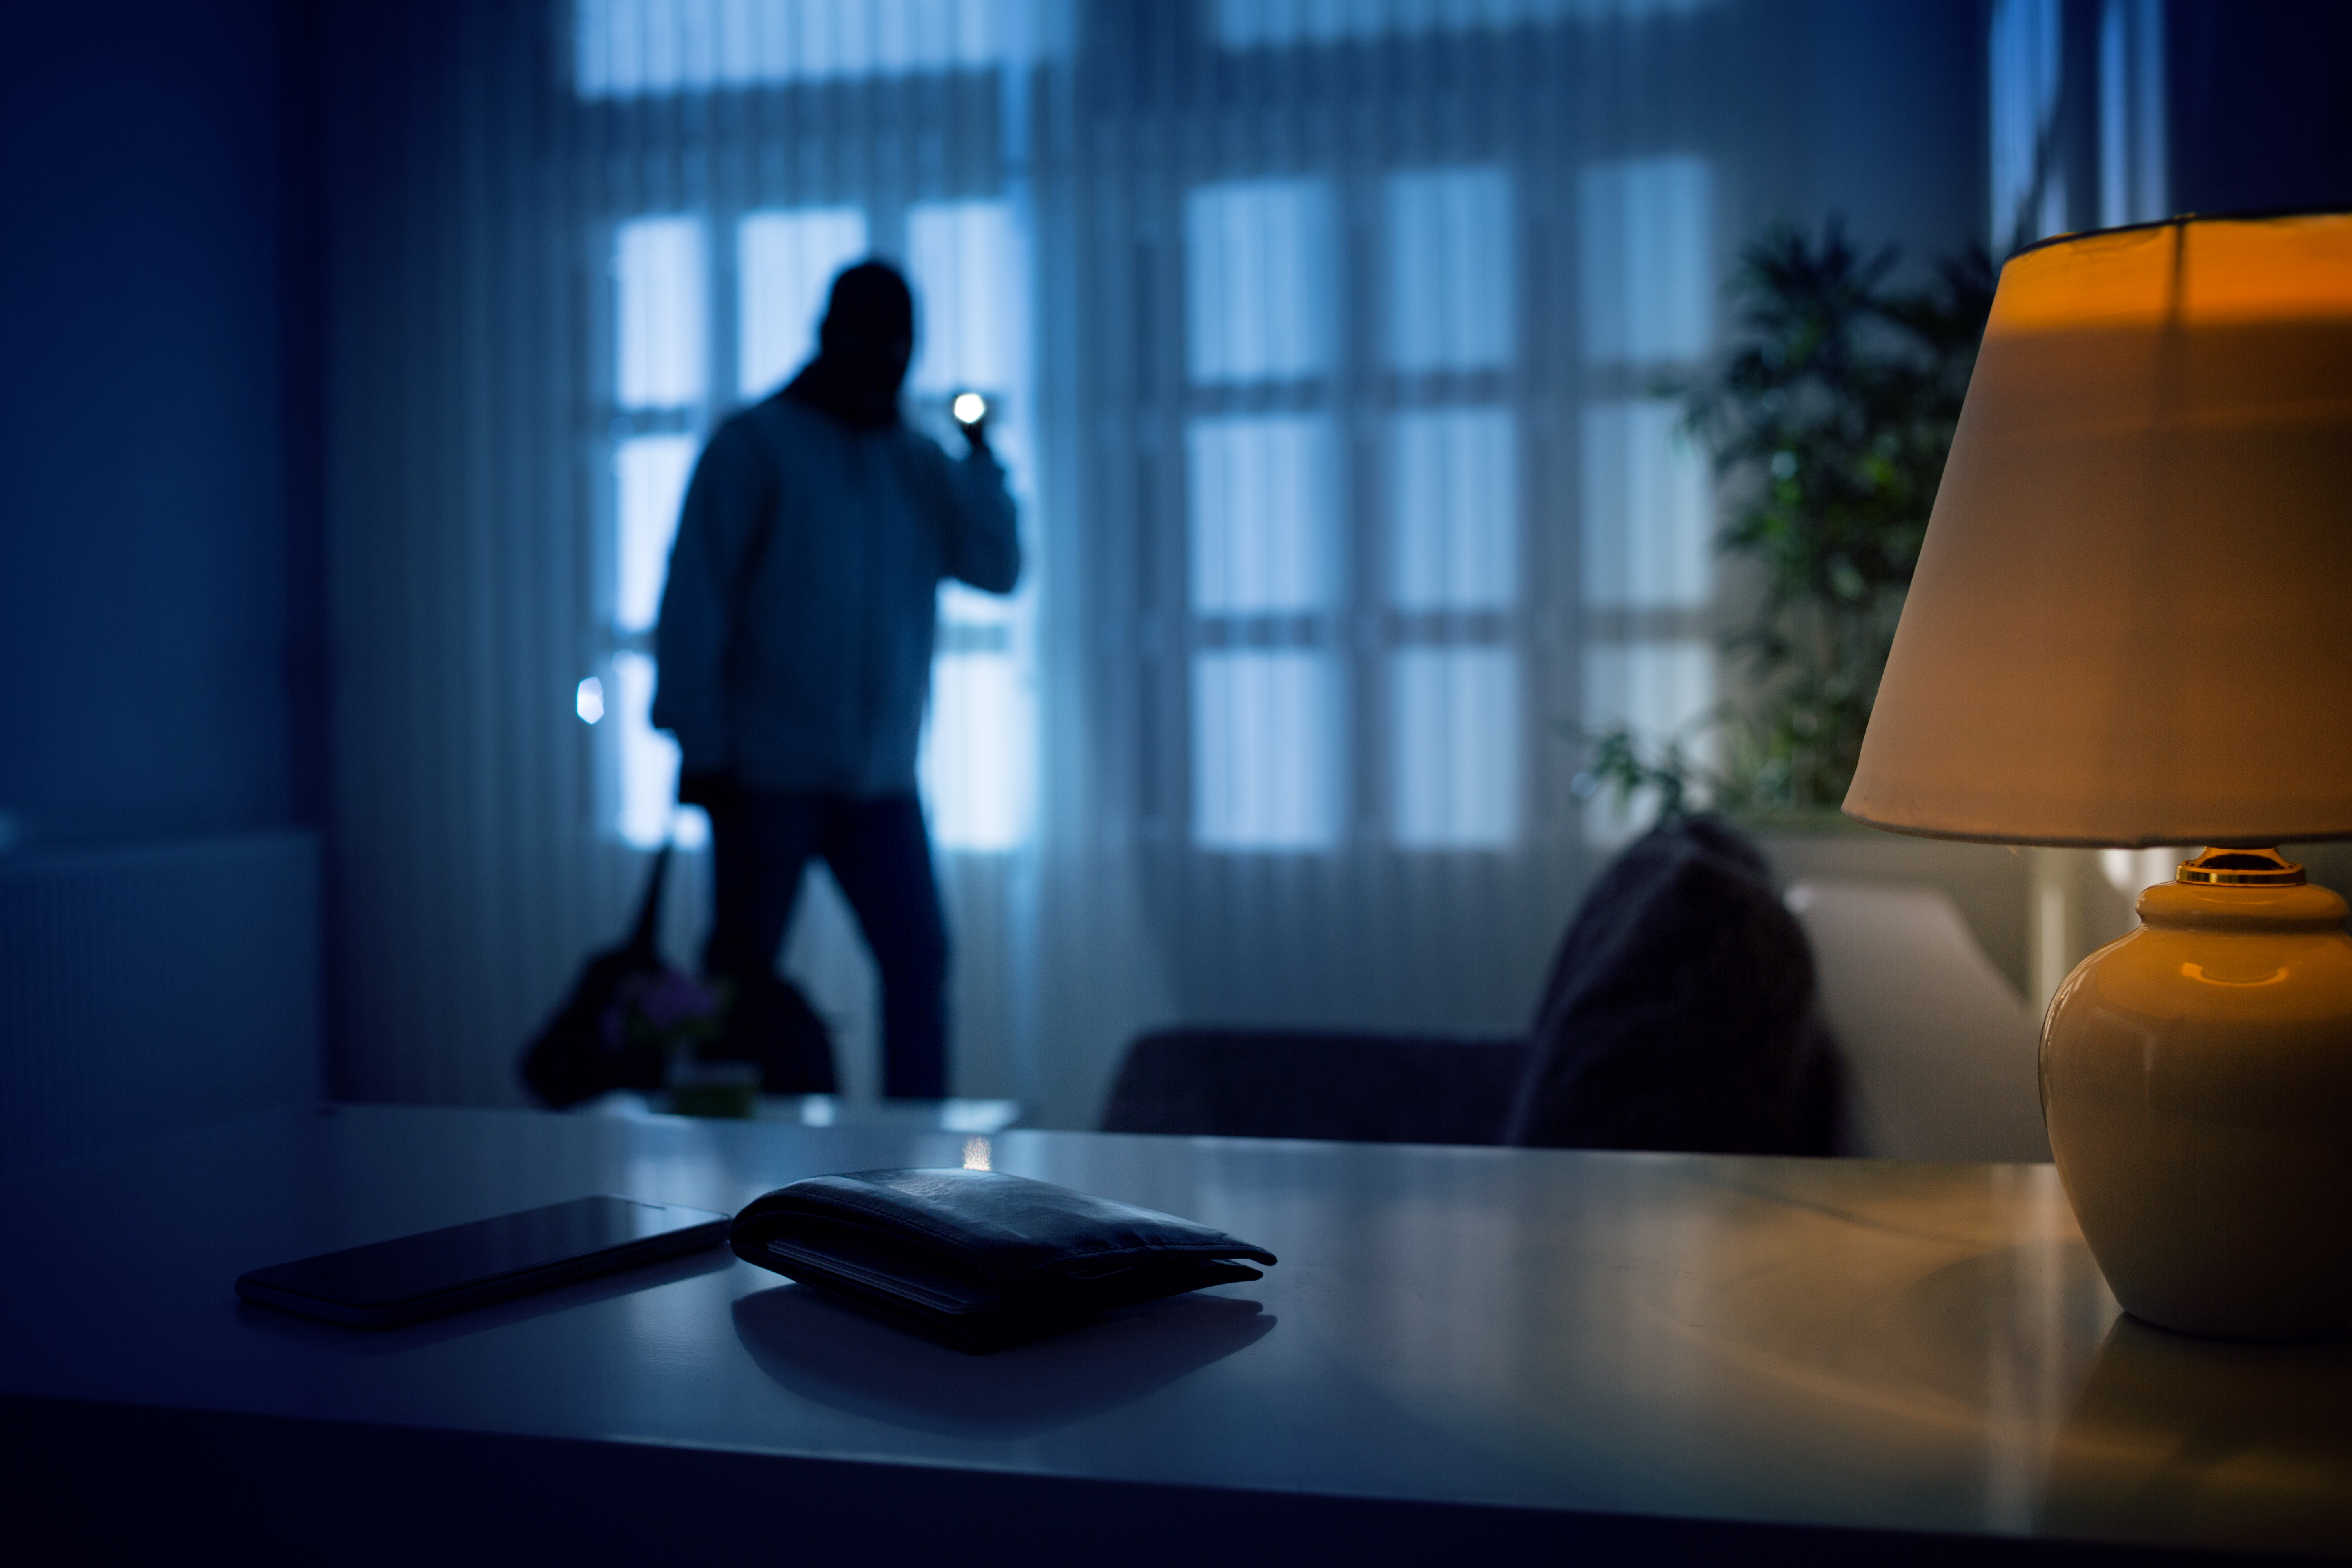 Un ladrón en una casa de noche. | Foto: Shutterstock